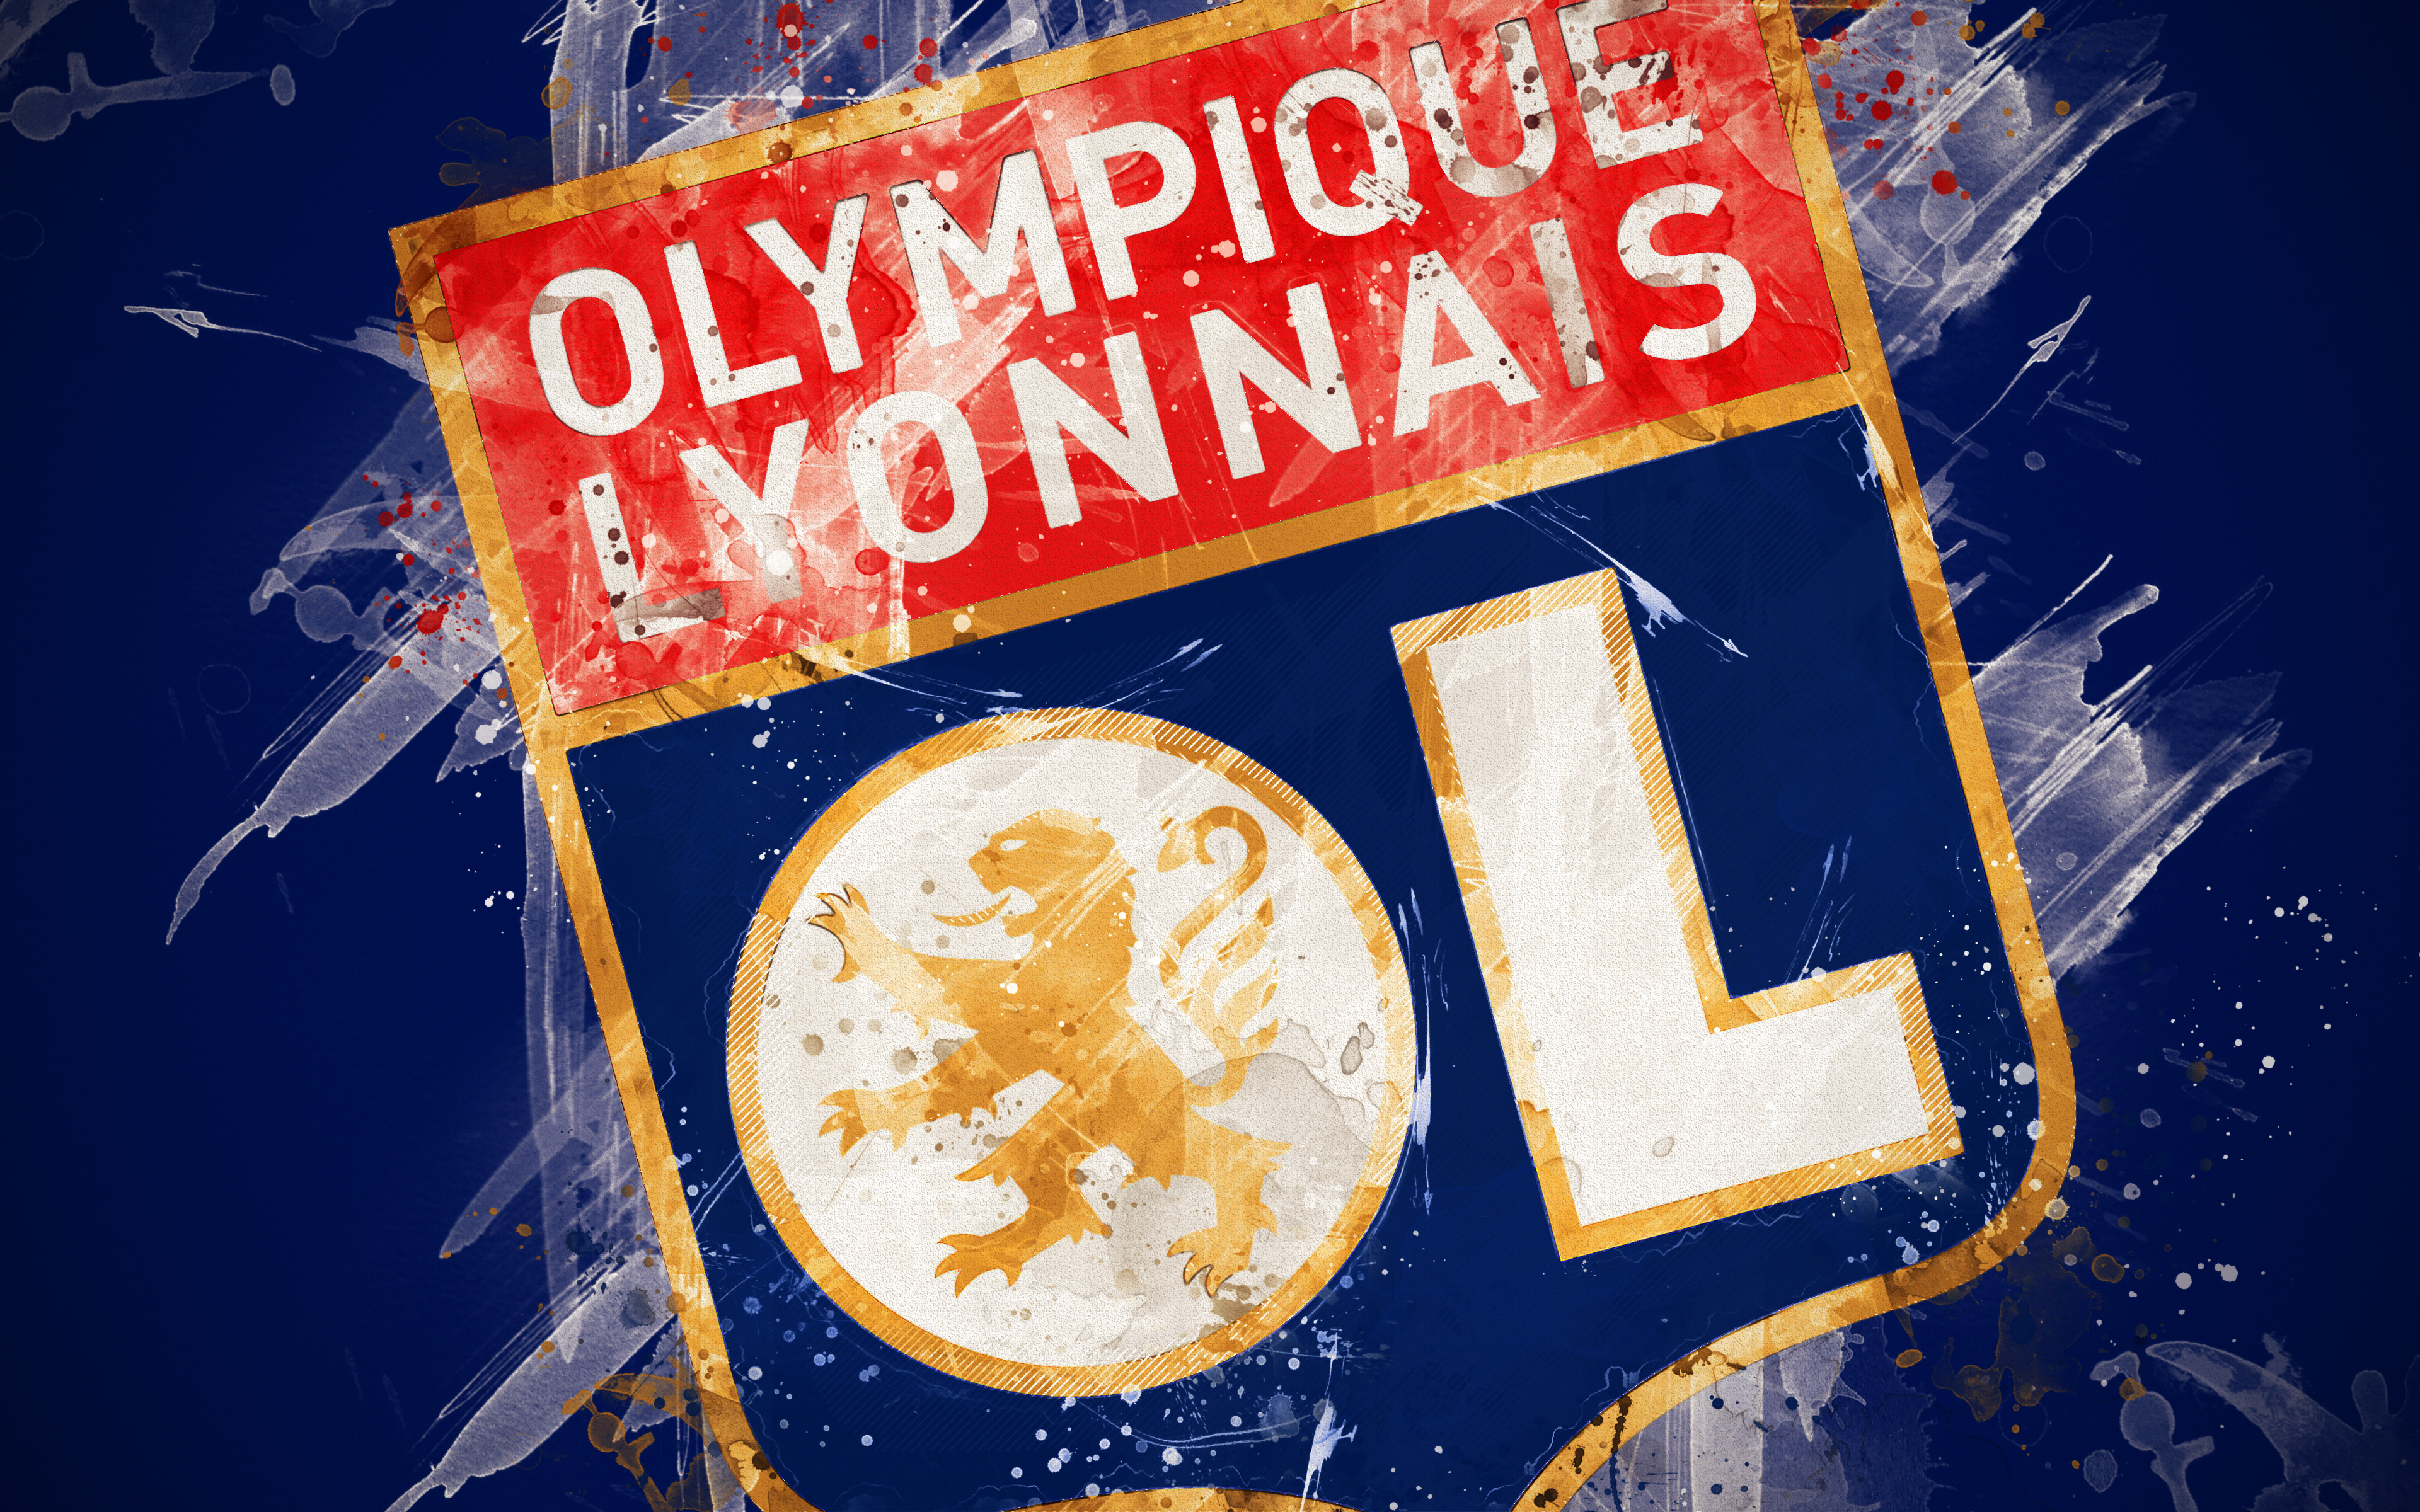 olympique lyonnais, sports, emblem, logo, soccer